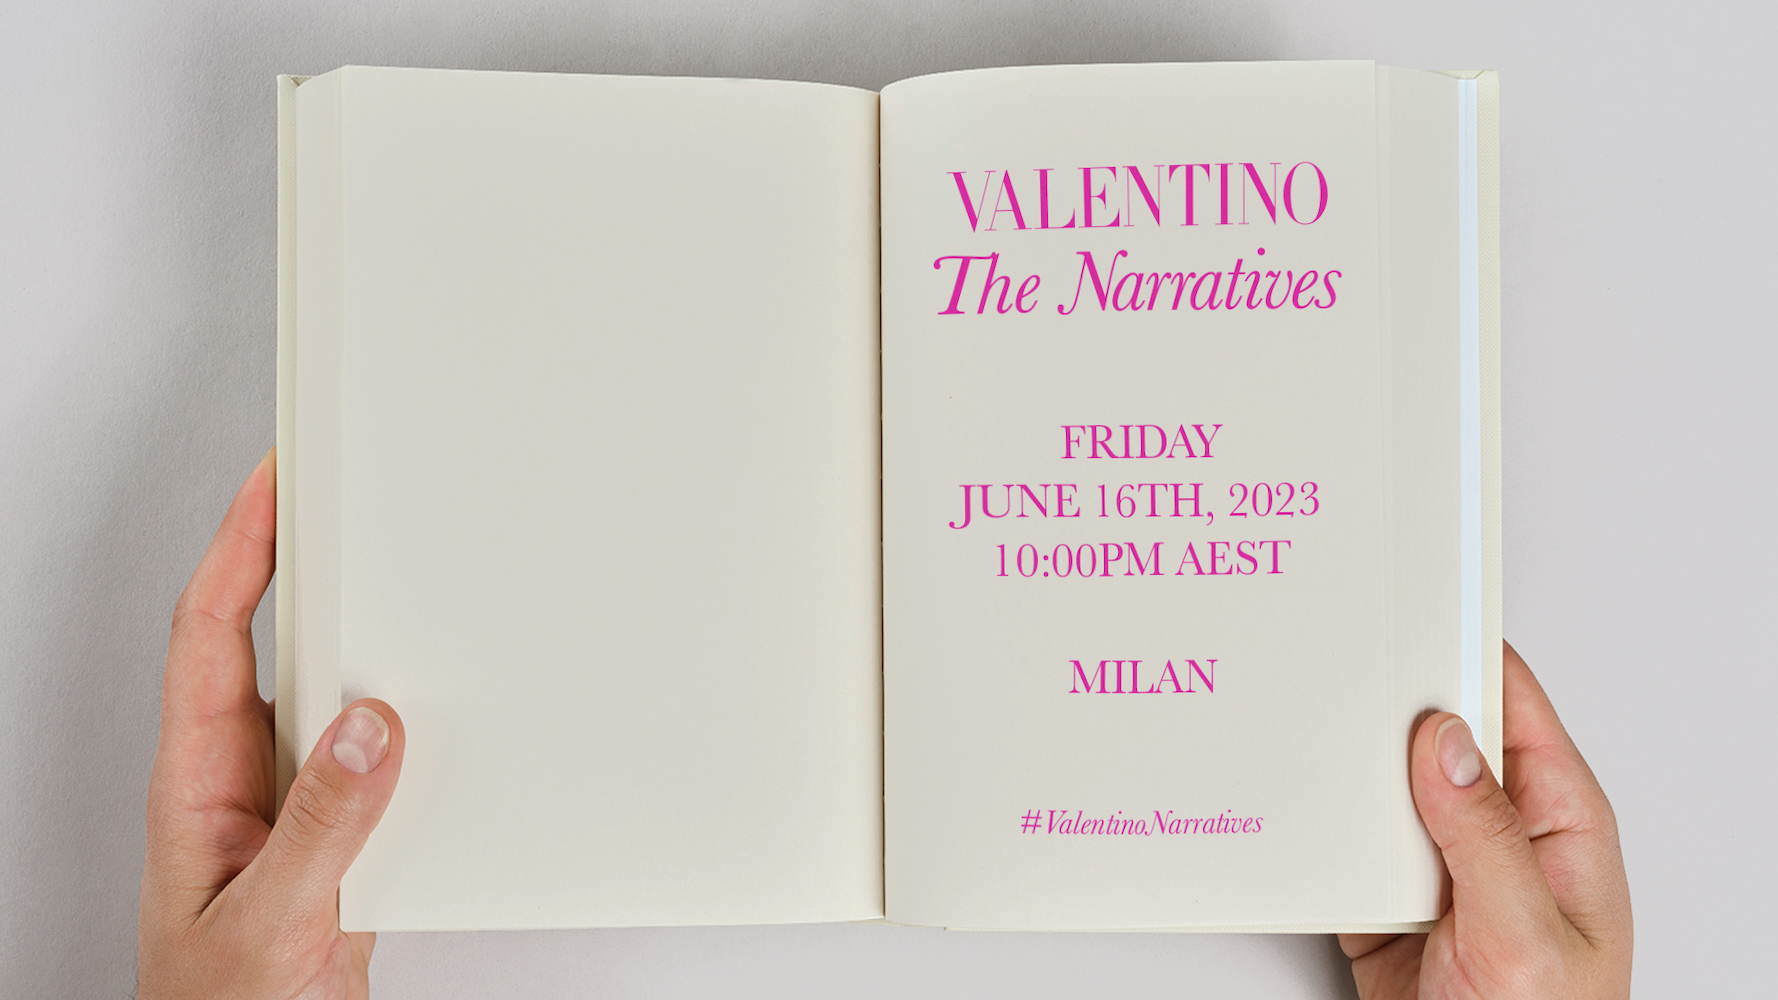 Valentino The Narratives